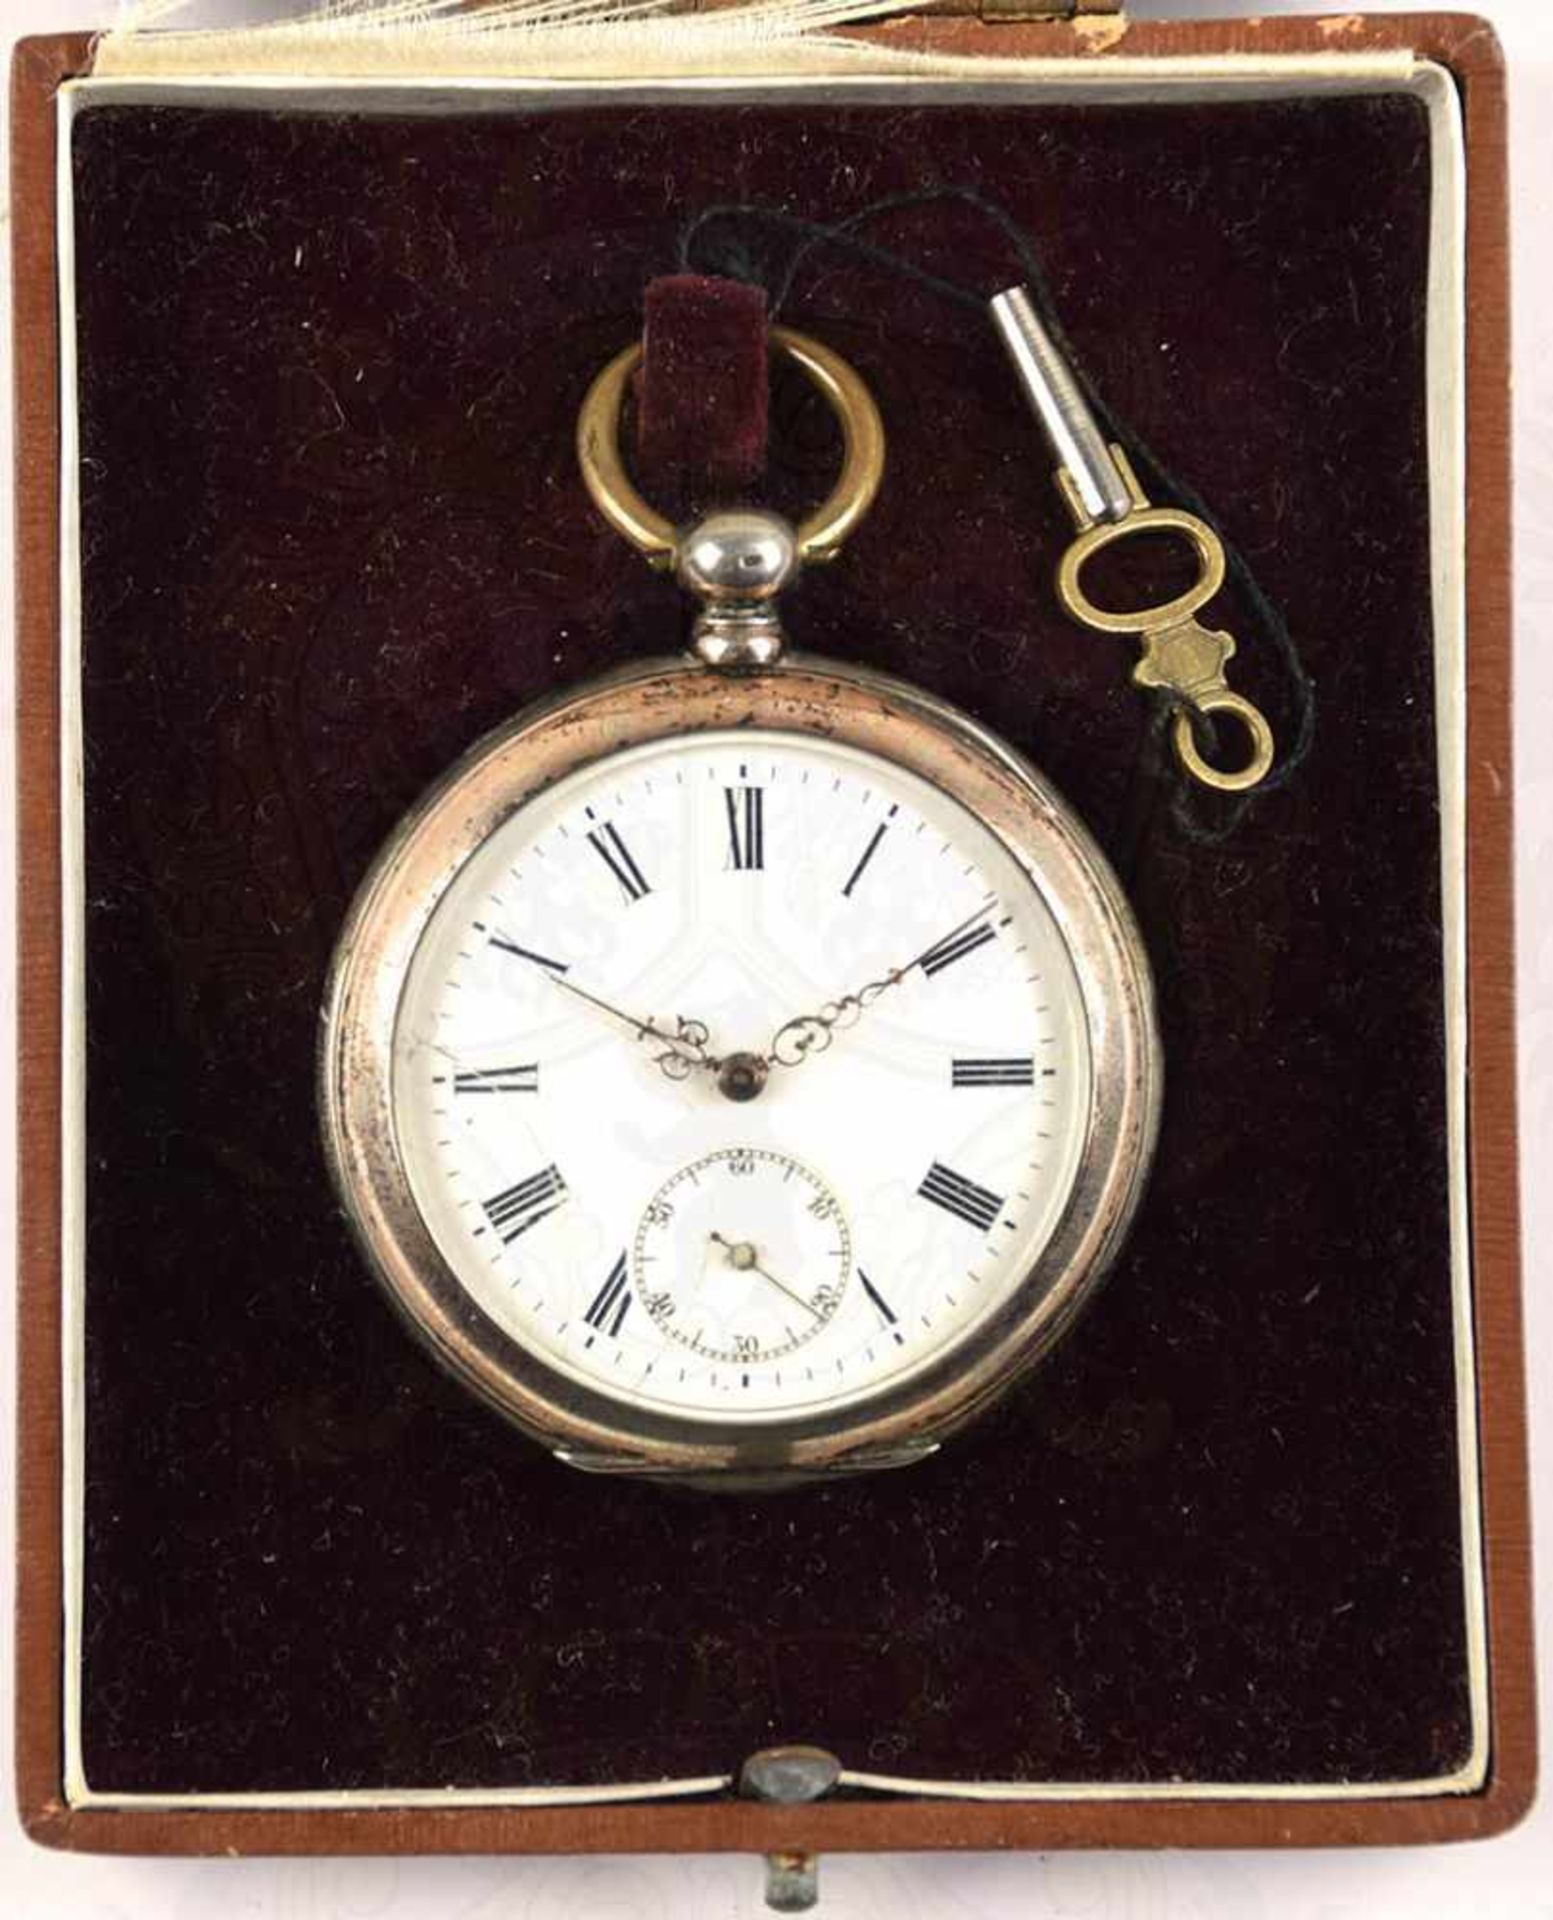 HERREN-TASCHENUHR, um 1890, punziert „800“, 15 Rubis, Tragering, Schlüsselaufzug (orig. Schlüssel